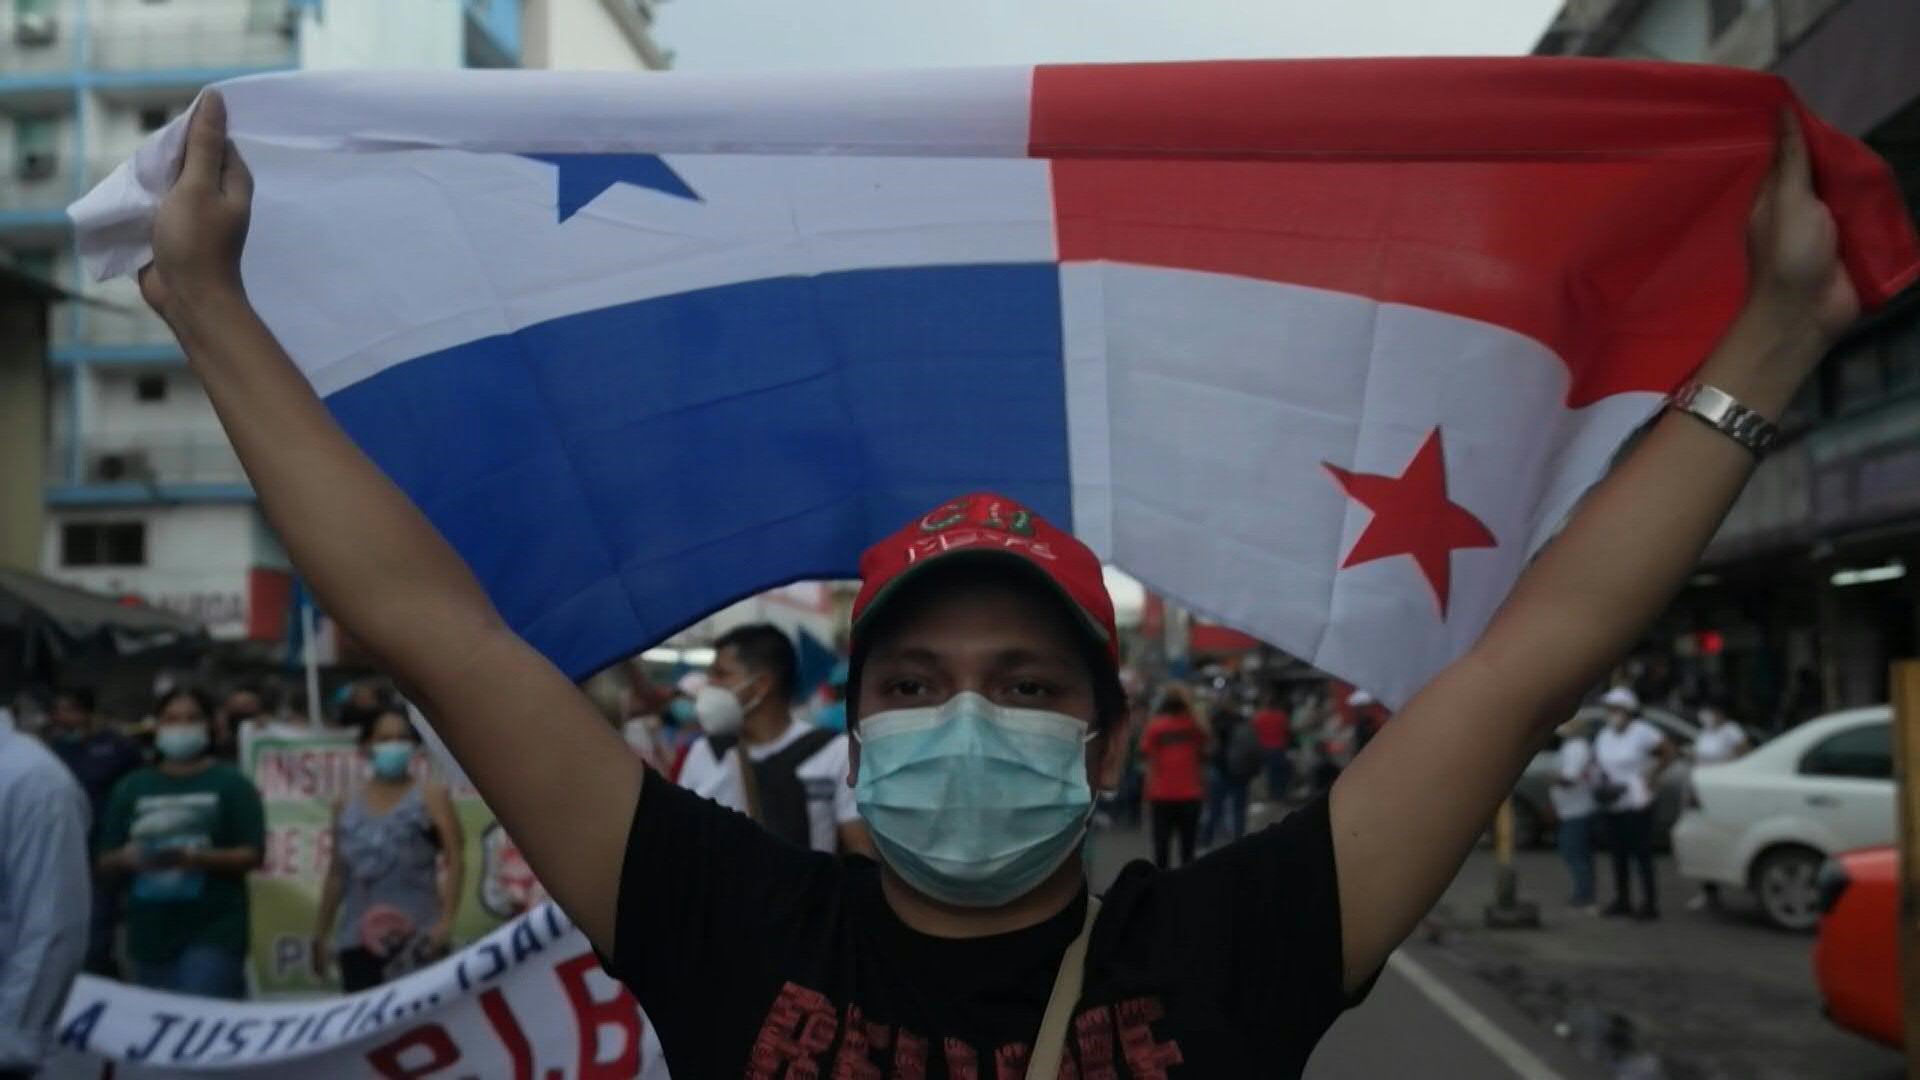 Miles de personas protestaron nuevamente en Panamá para exigir al gobierno medidas contra la inflación y la corrupción, pese al anuncio del presidente panameño, Laurentino Cortizo, de bajar el precio de los combustibles y algunos alimentos (AFP)